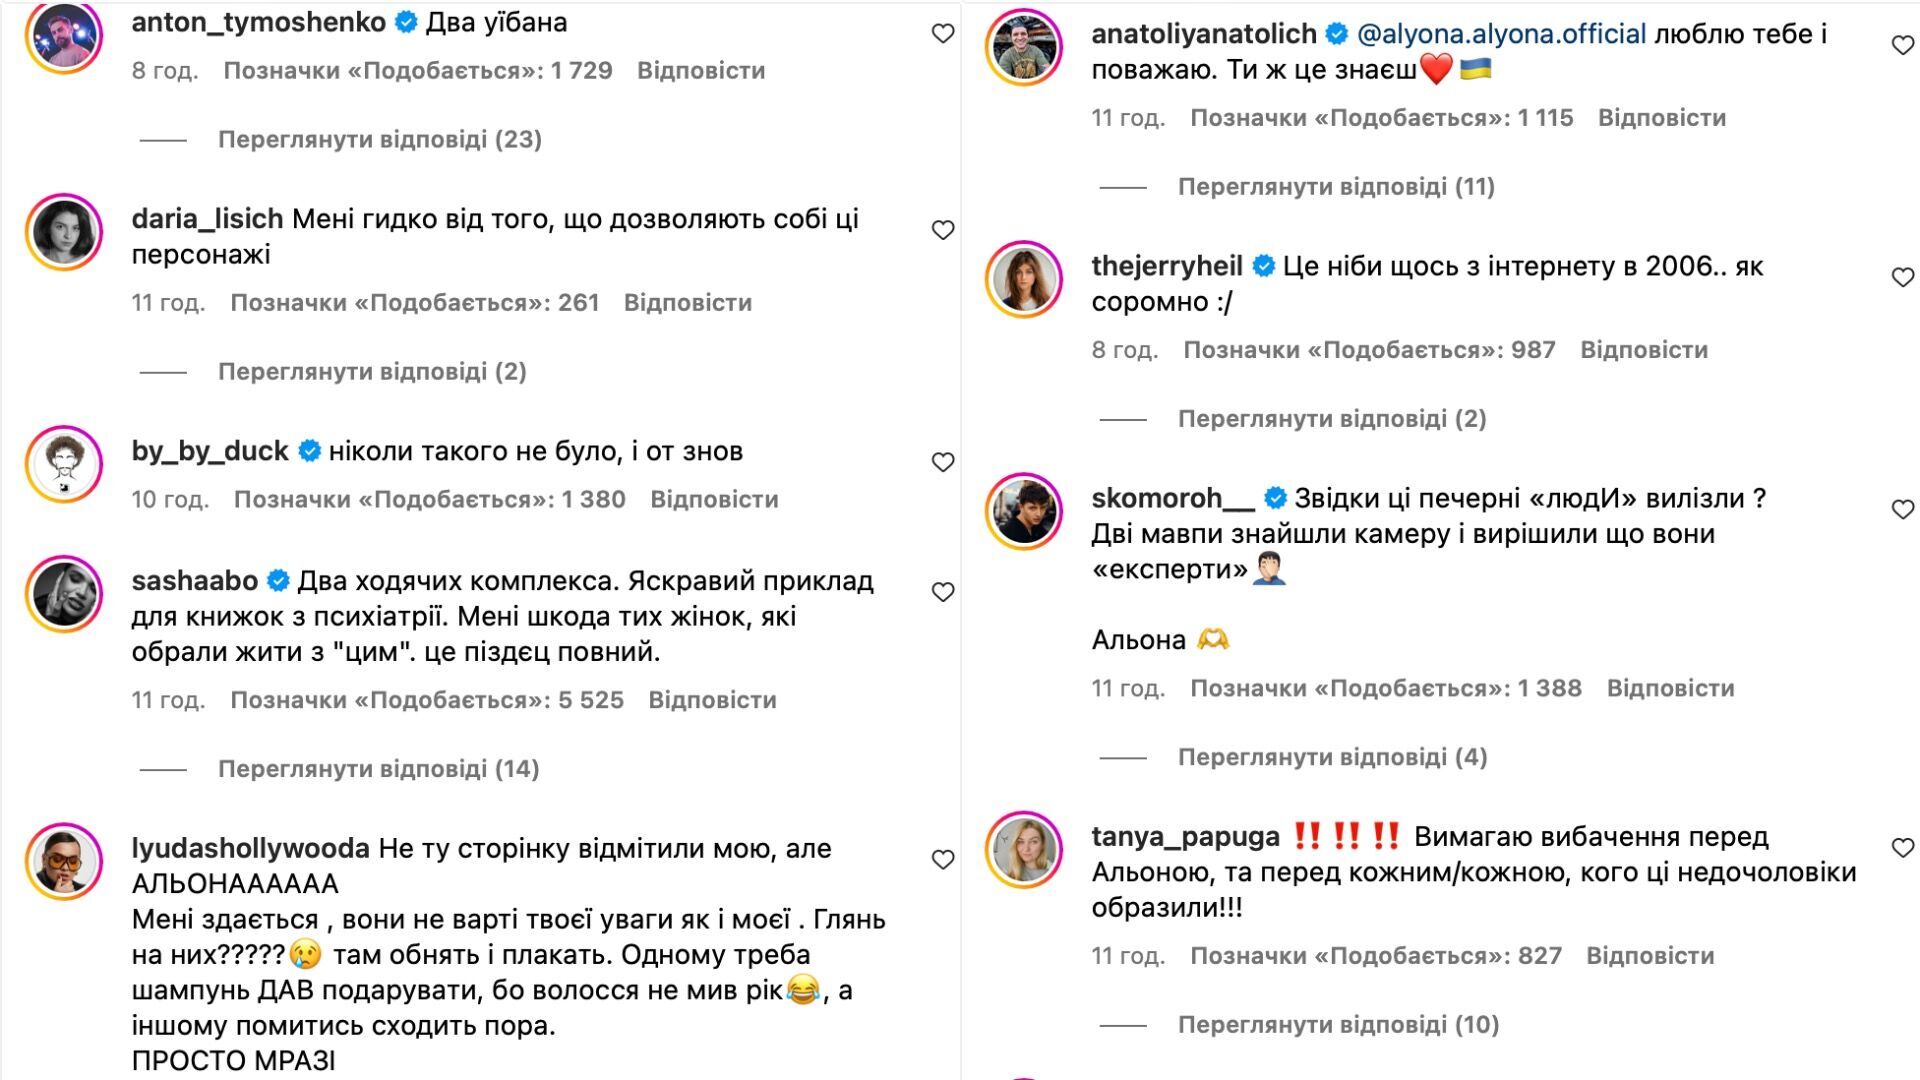 Скандал со "страшными женщинами" получил продолжение: Alyona Alyona вспомнила "хабалку", а "политтехнологи" Иванов и Петров пробили новое дно